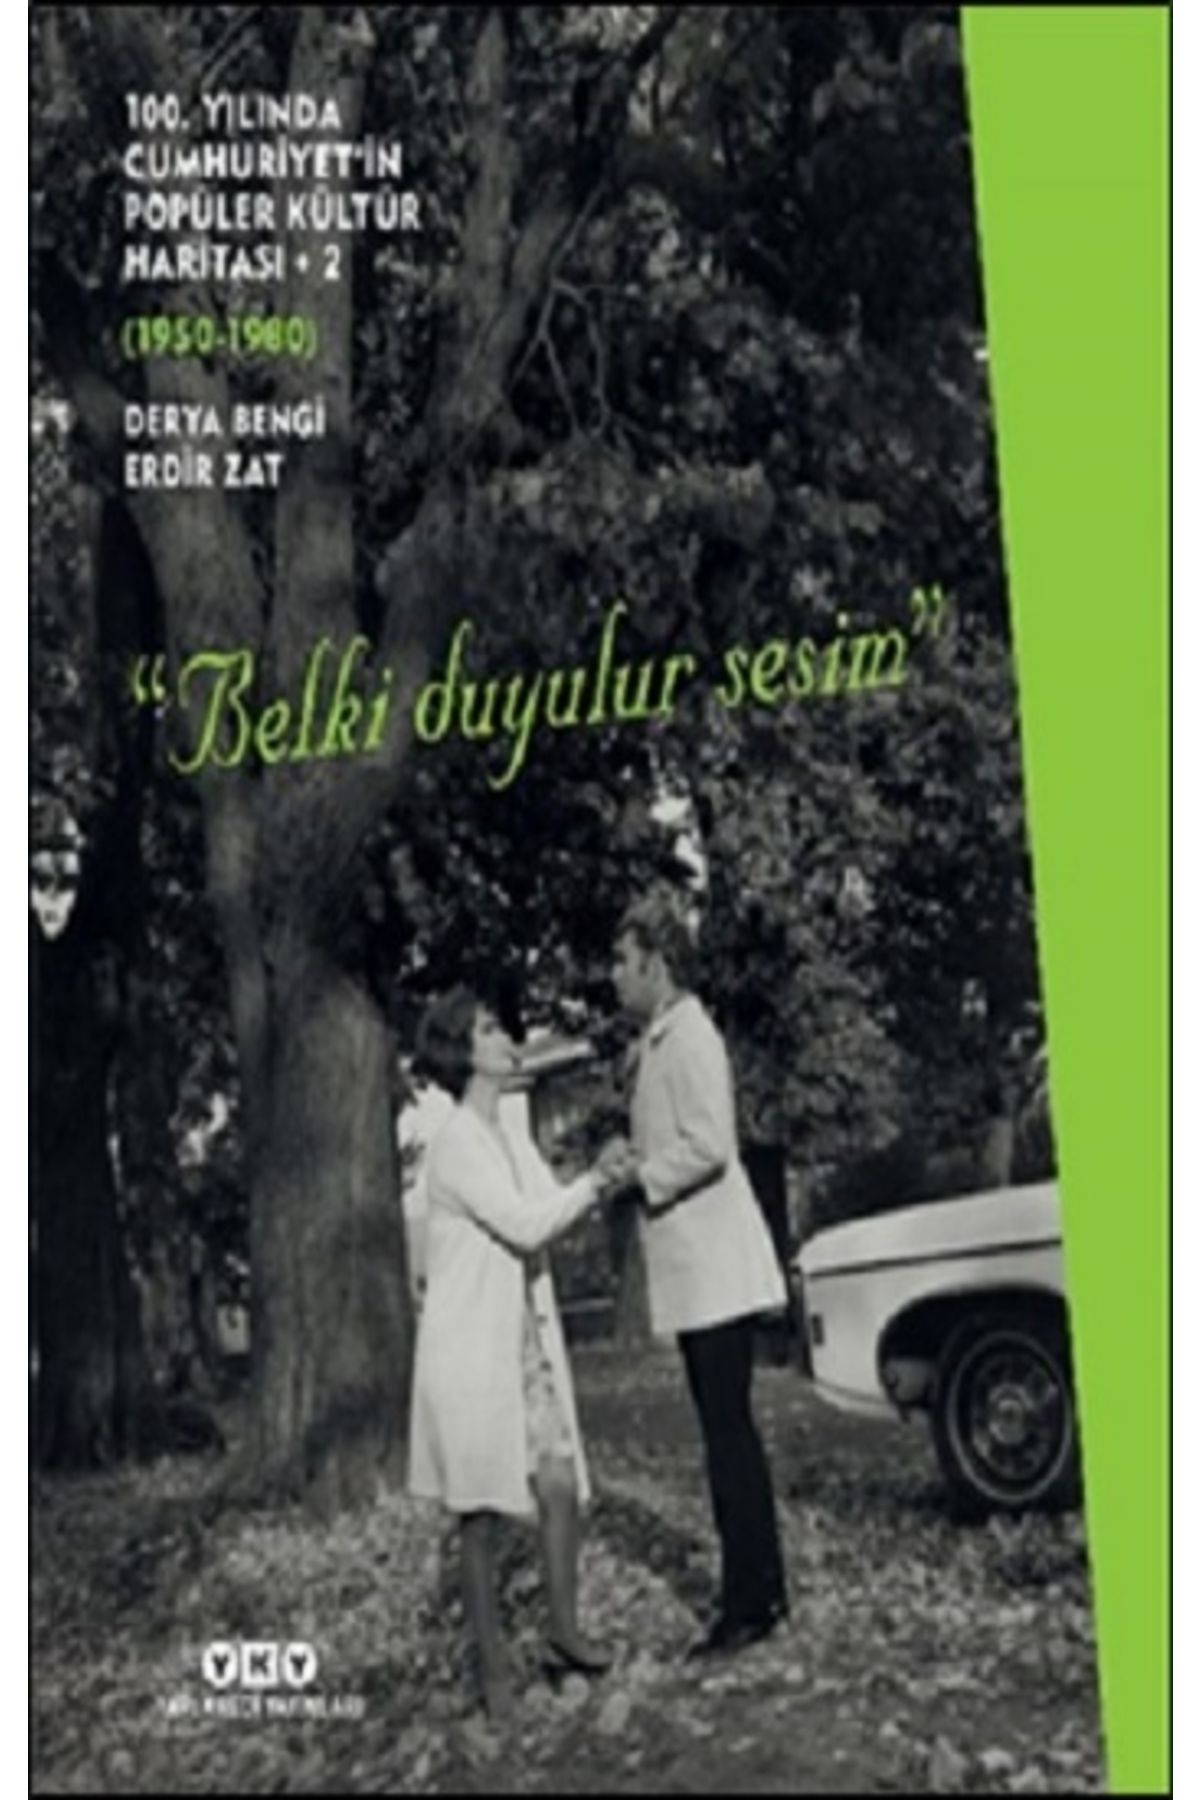 Yapı Kredi Yayınları 100. Yılında Cumhuriyet’in Popüler Kültür Haritası 2 (1950-1980) “belki Duyulur Sesim”